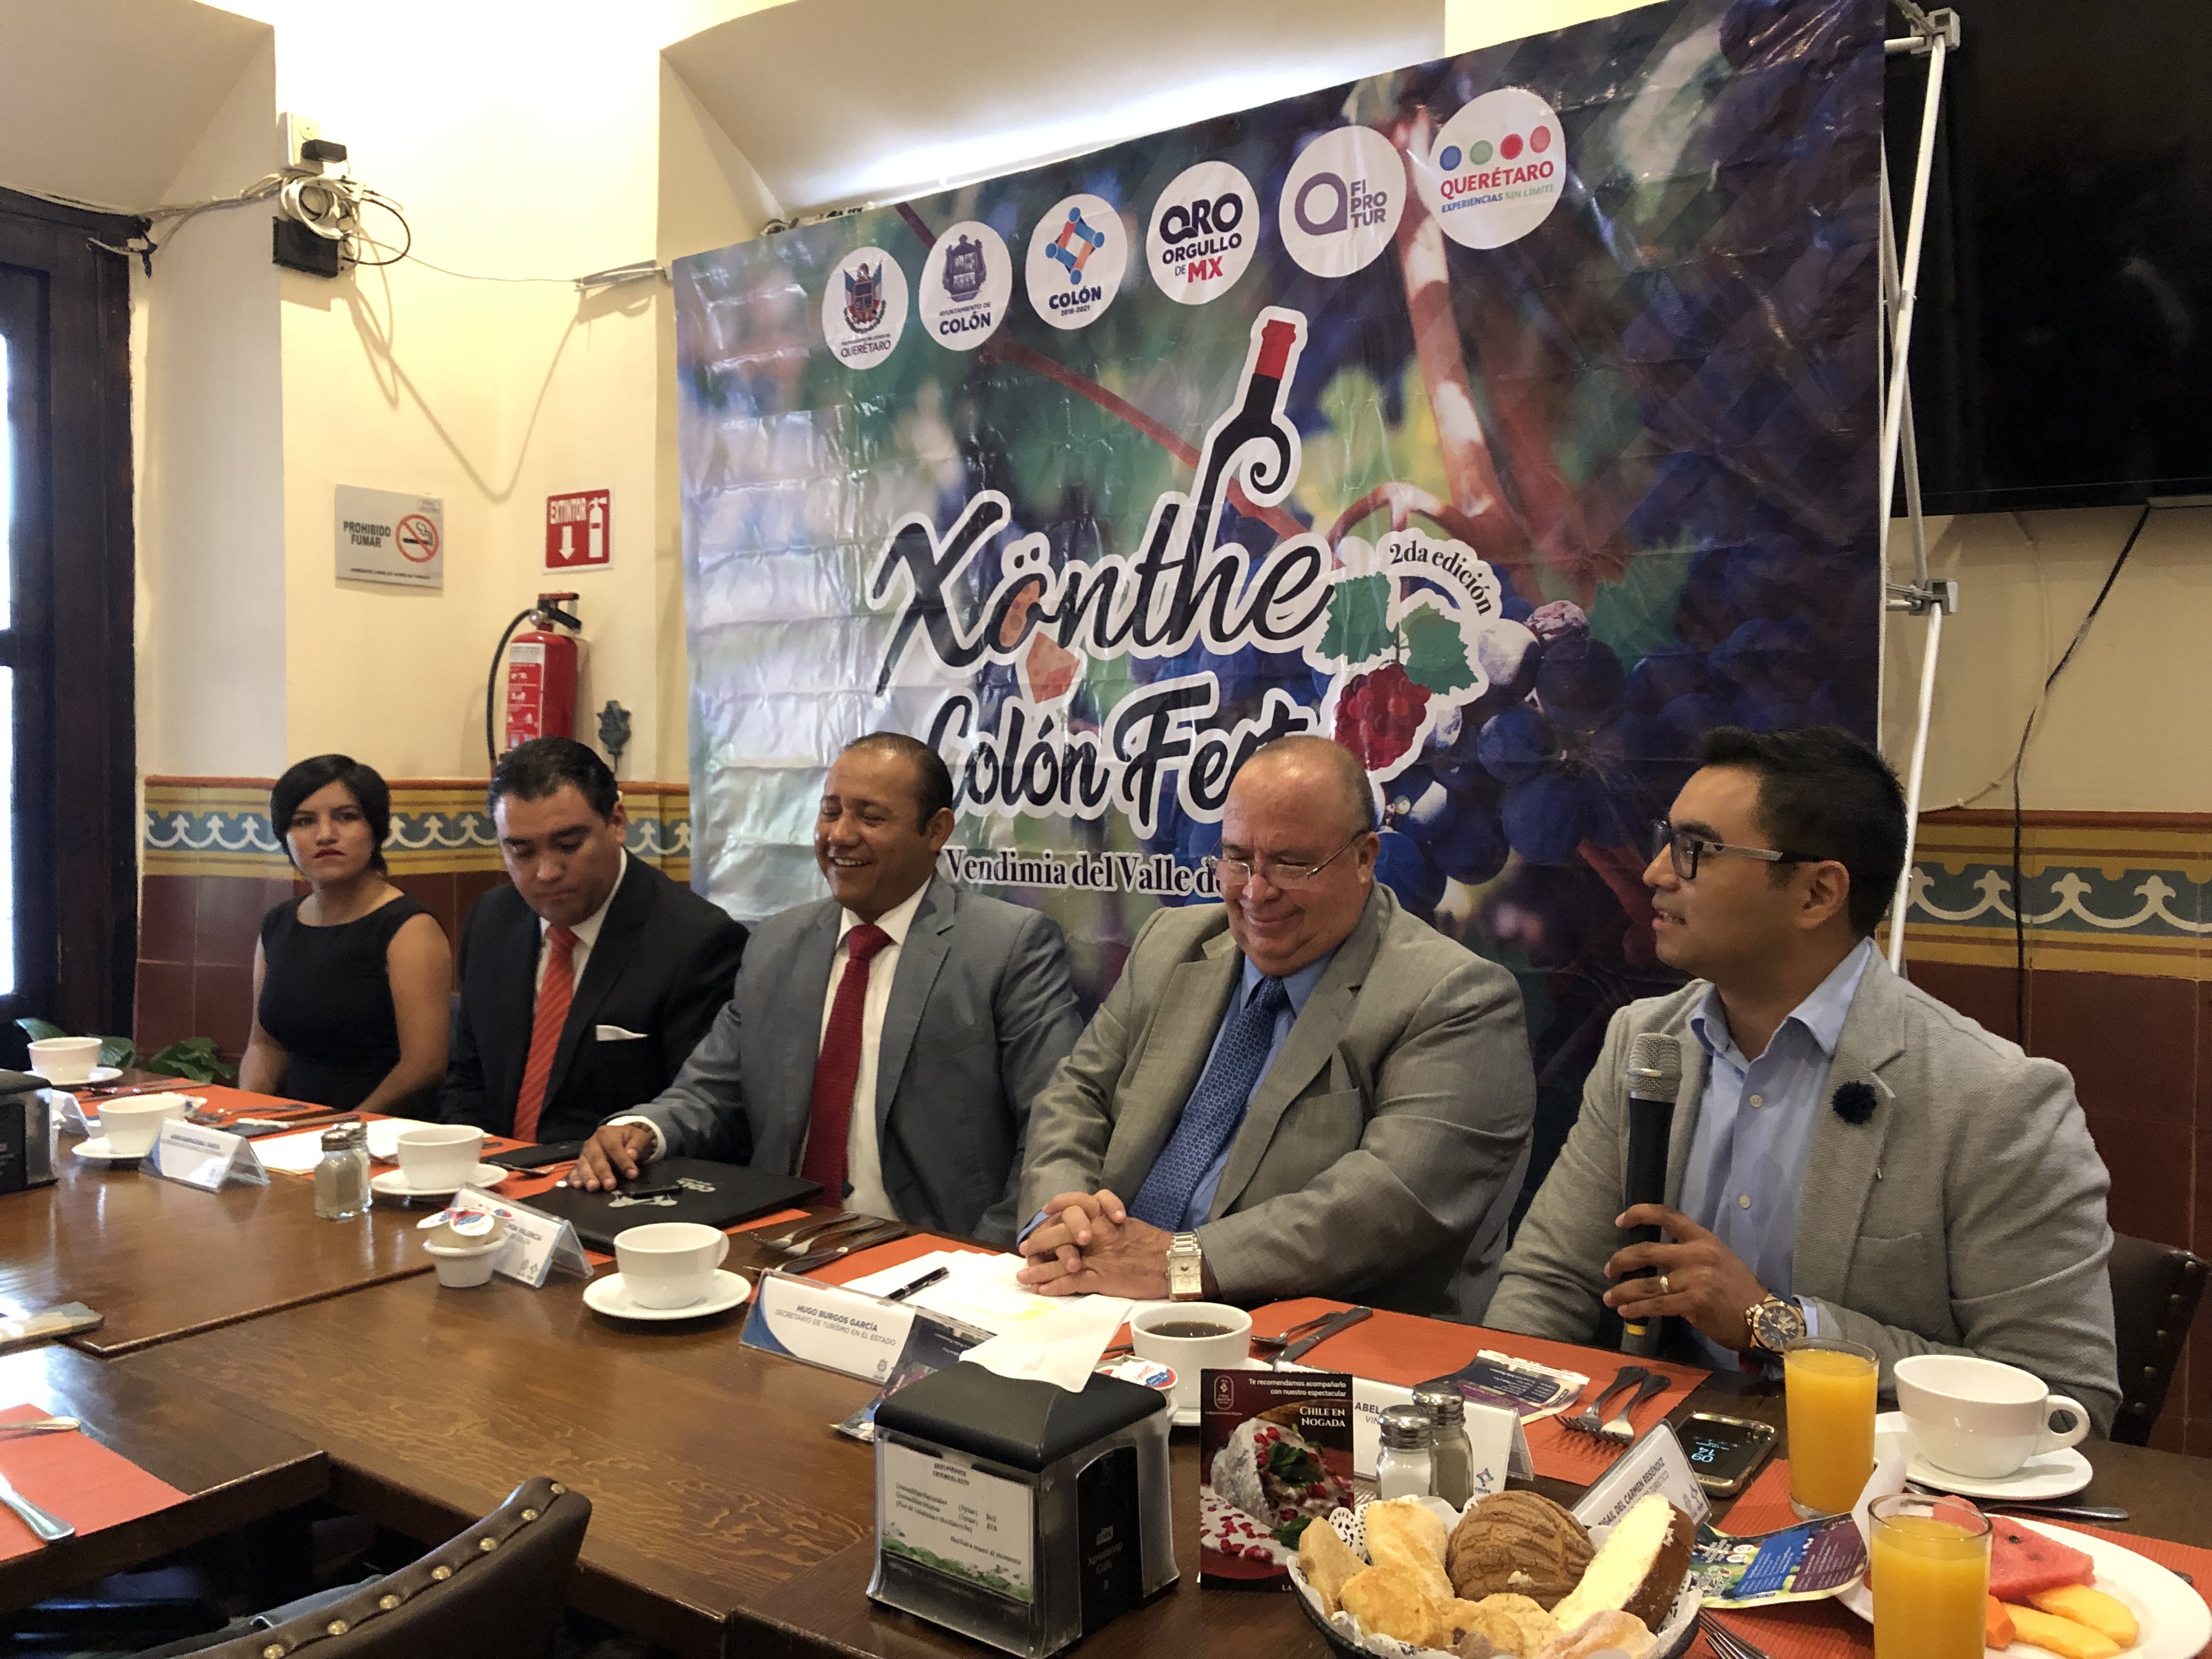  Colón anuncia segunda edición del Xönthe Colón Fest; esperan derrama de 2.5 mdp